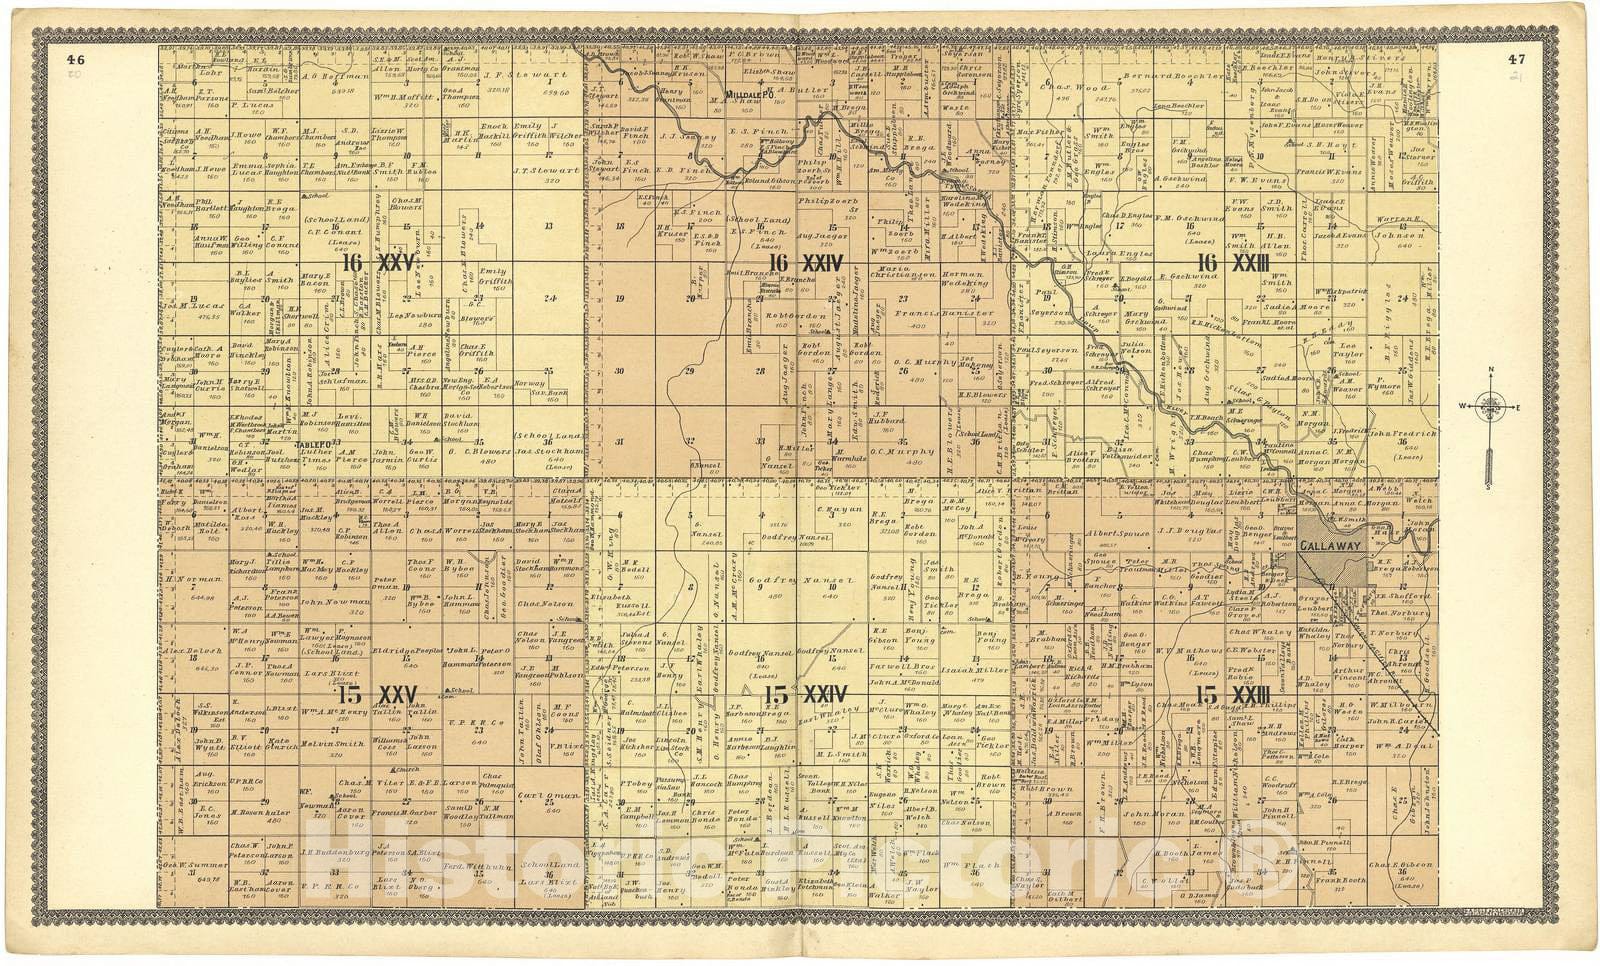 Historic 1904 Map - Standard Atlas of Custer County, Nebraska - 16 XXV; 16 XXIV; 16 XXIII; 15 XXV; 15 XXIV; 15 XXIII